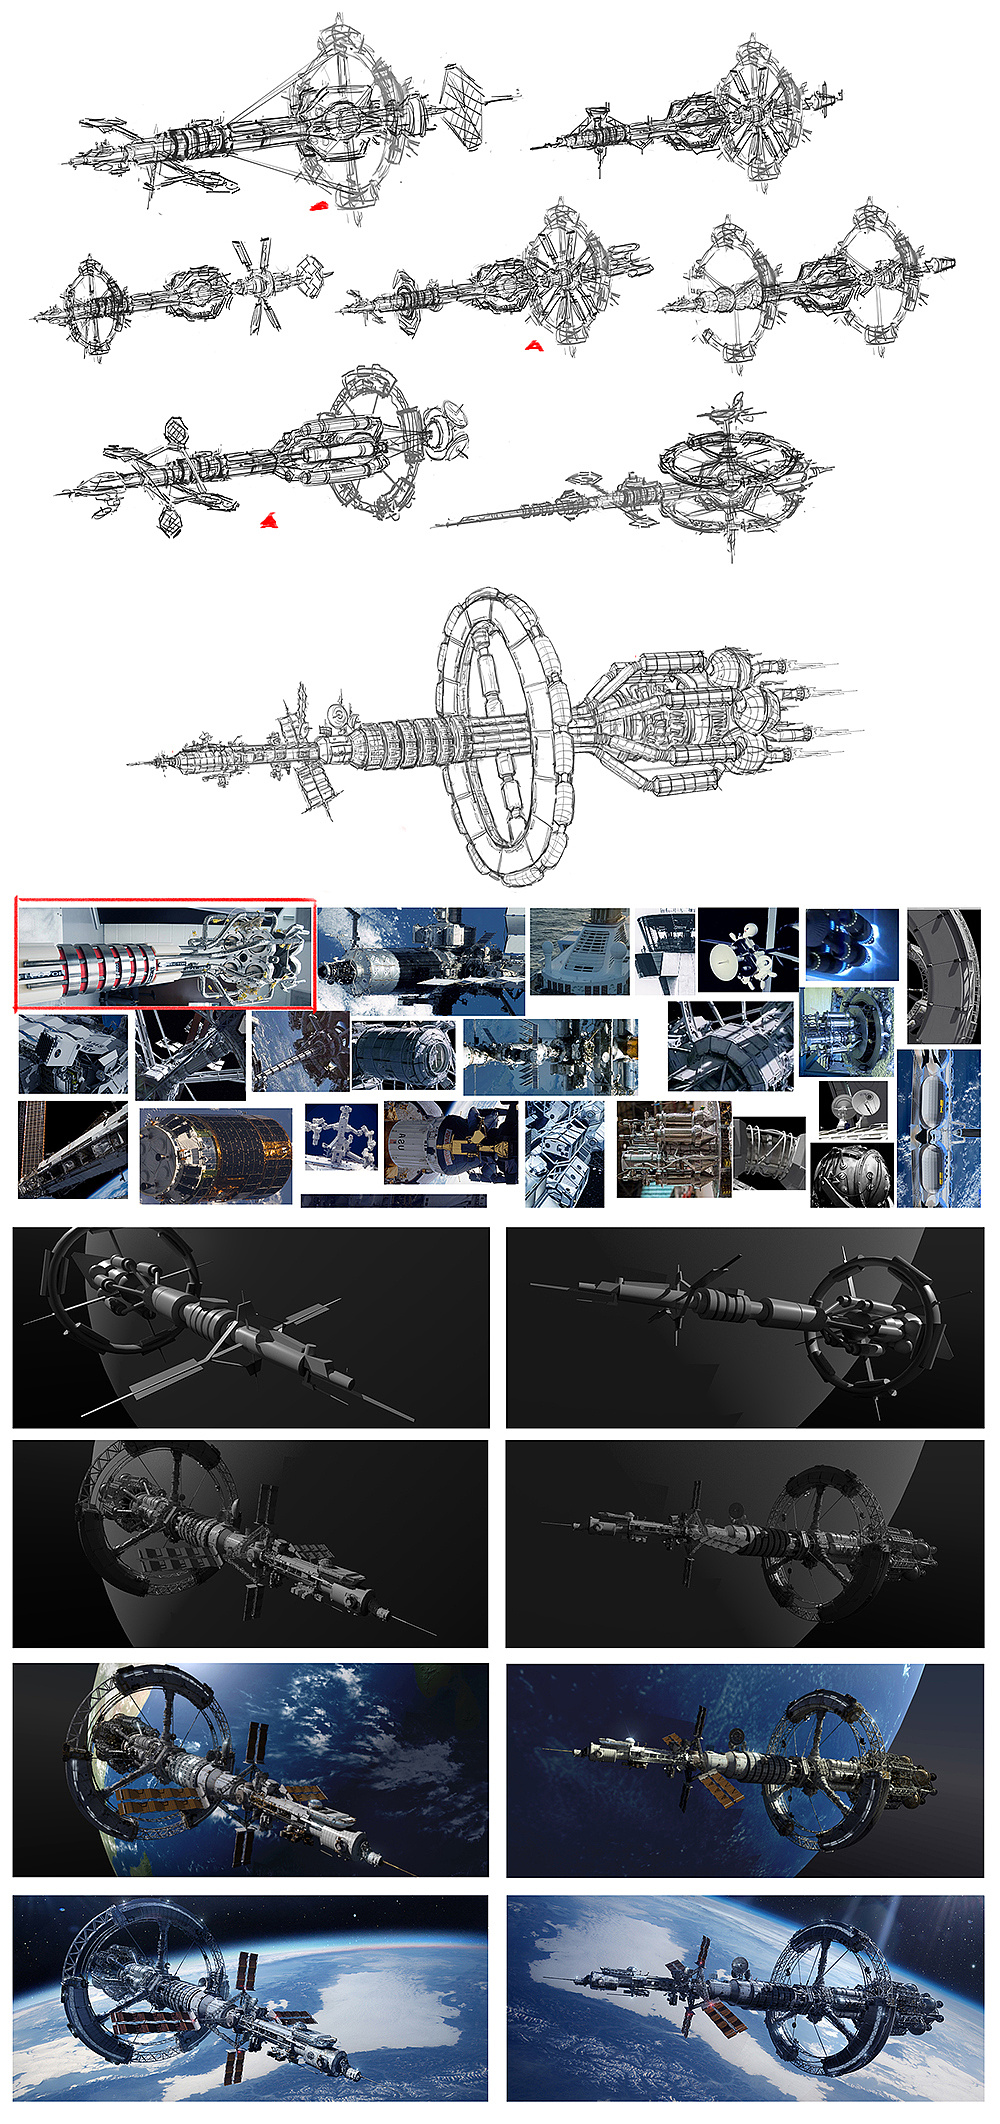 科幻未来 2055年 新星号探索飞船 场景概念设计